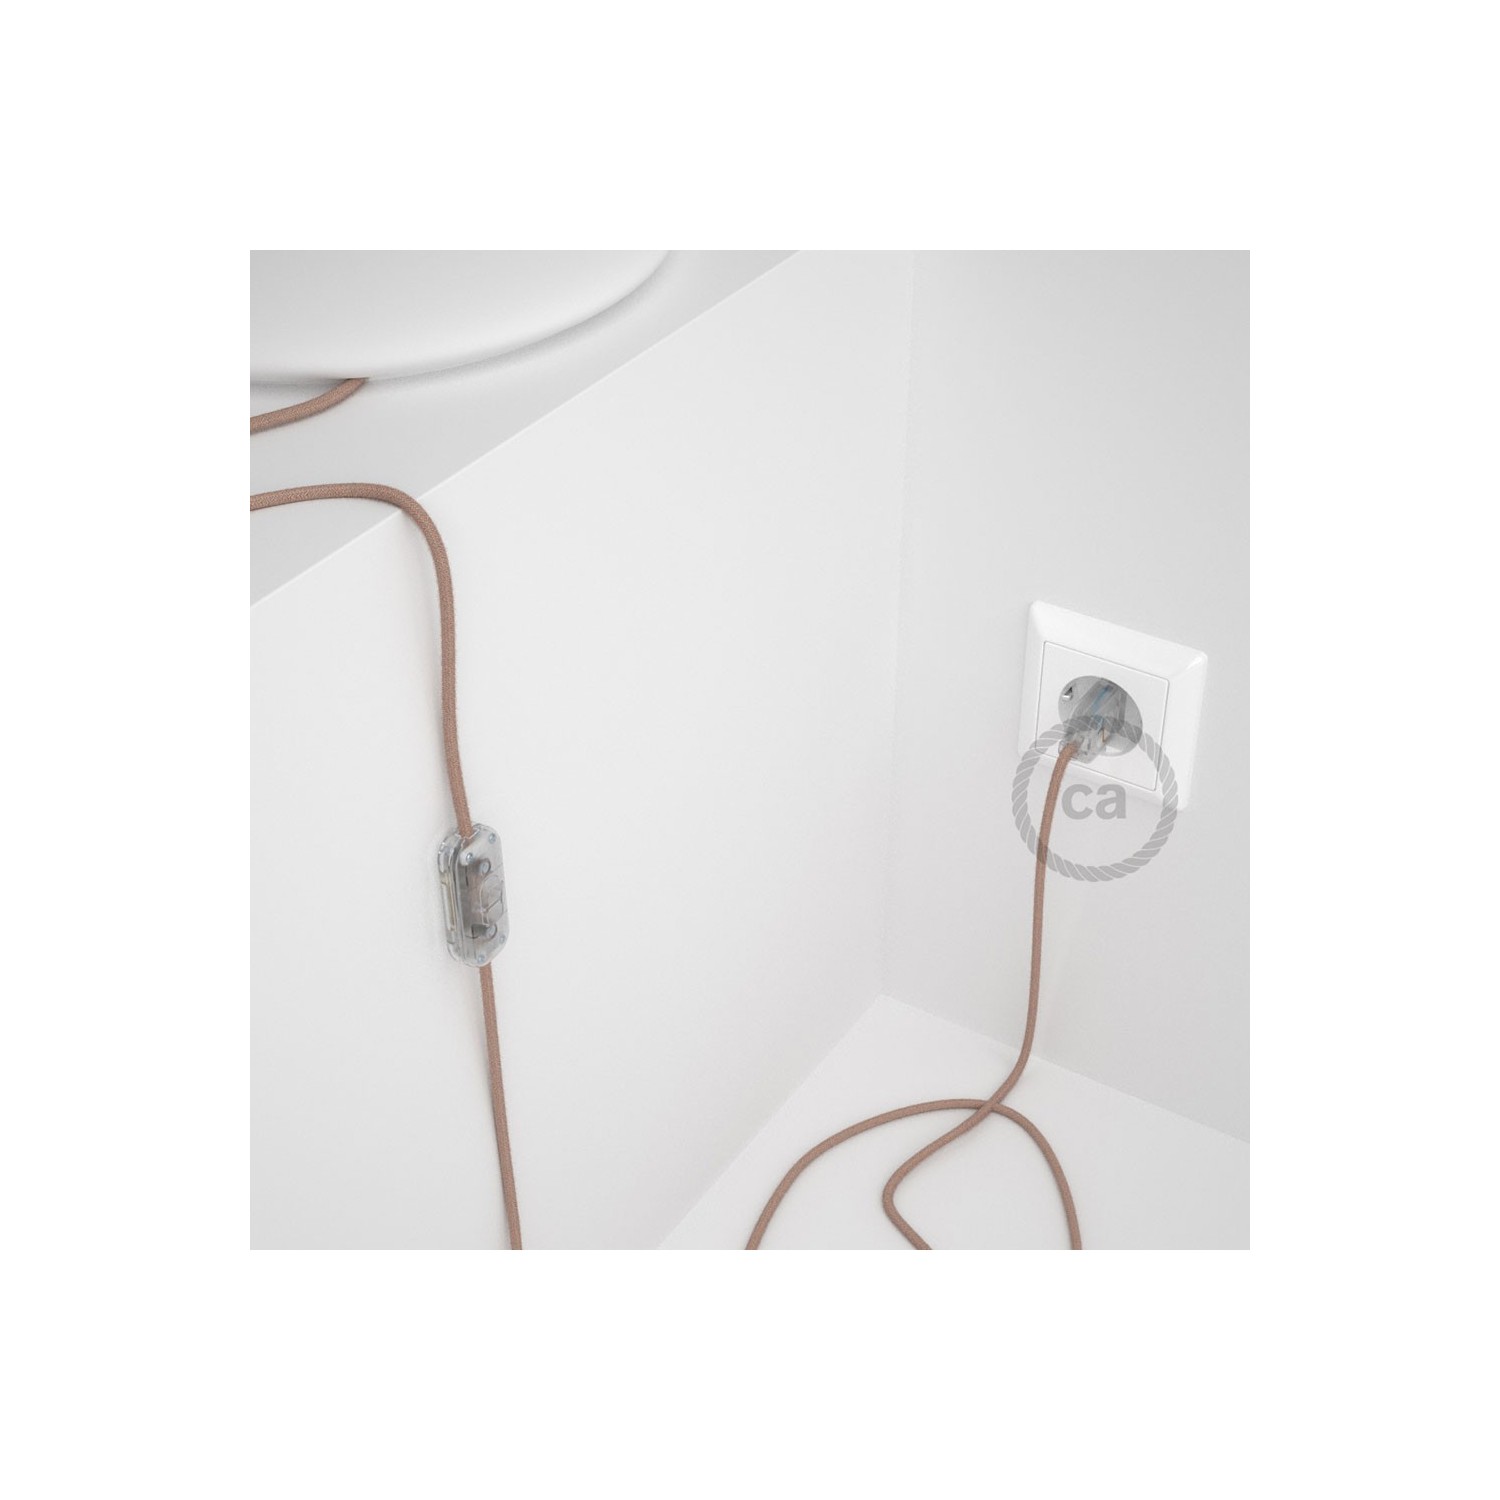 Cableado para lámpara, cable RD71 Algodón y Lino ZigZag Rosa Viejo 1,8m. Elige tu el color de la clavija y del interruptor!